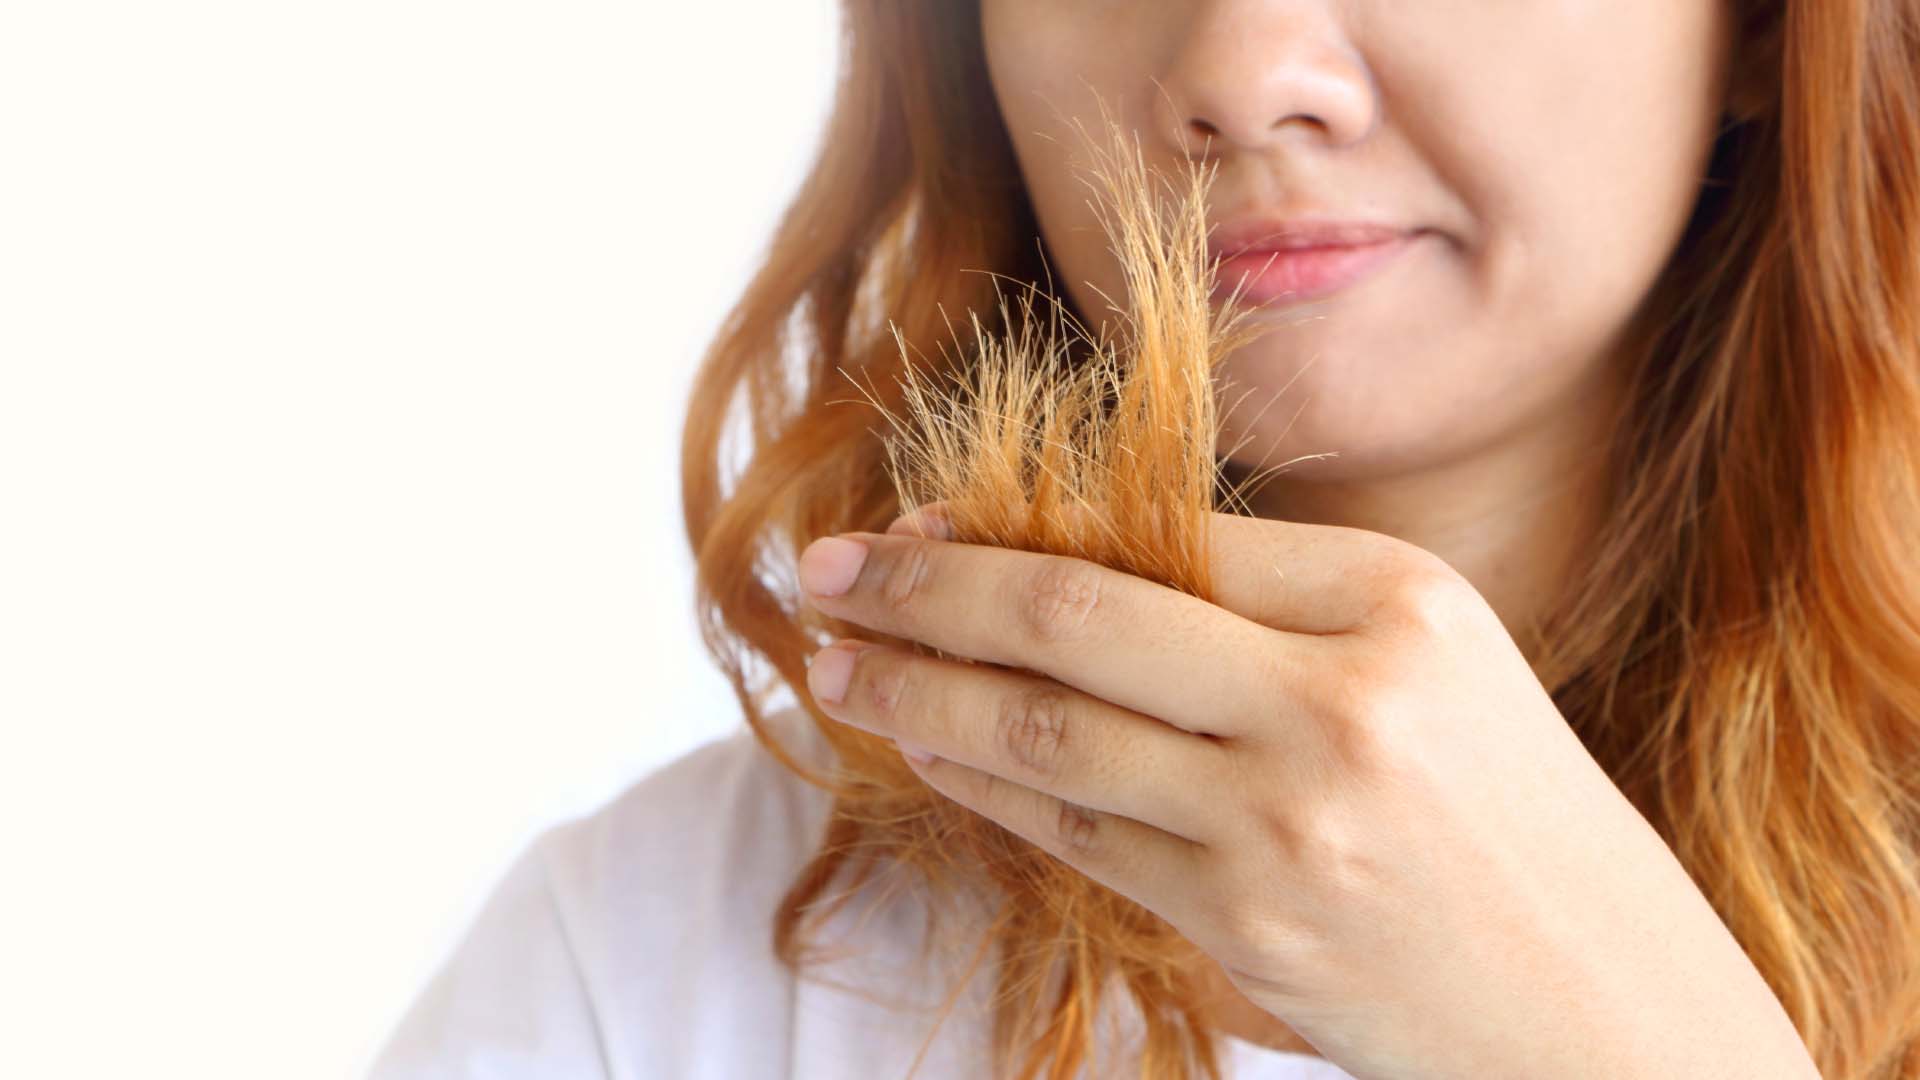 Detoxschampo kan skada håret - gör så här istället